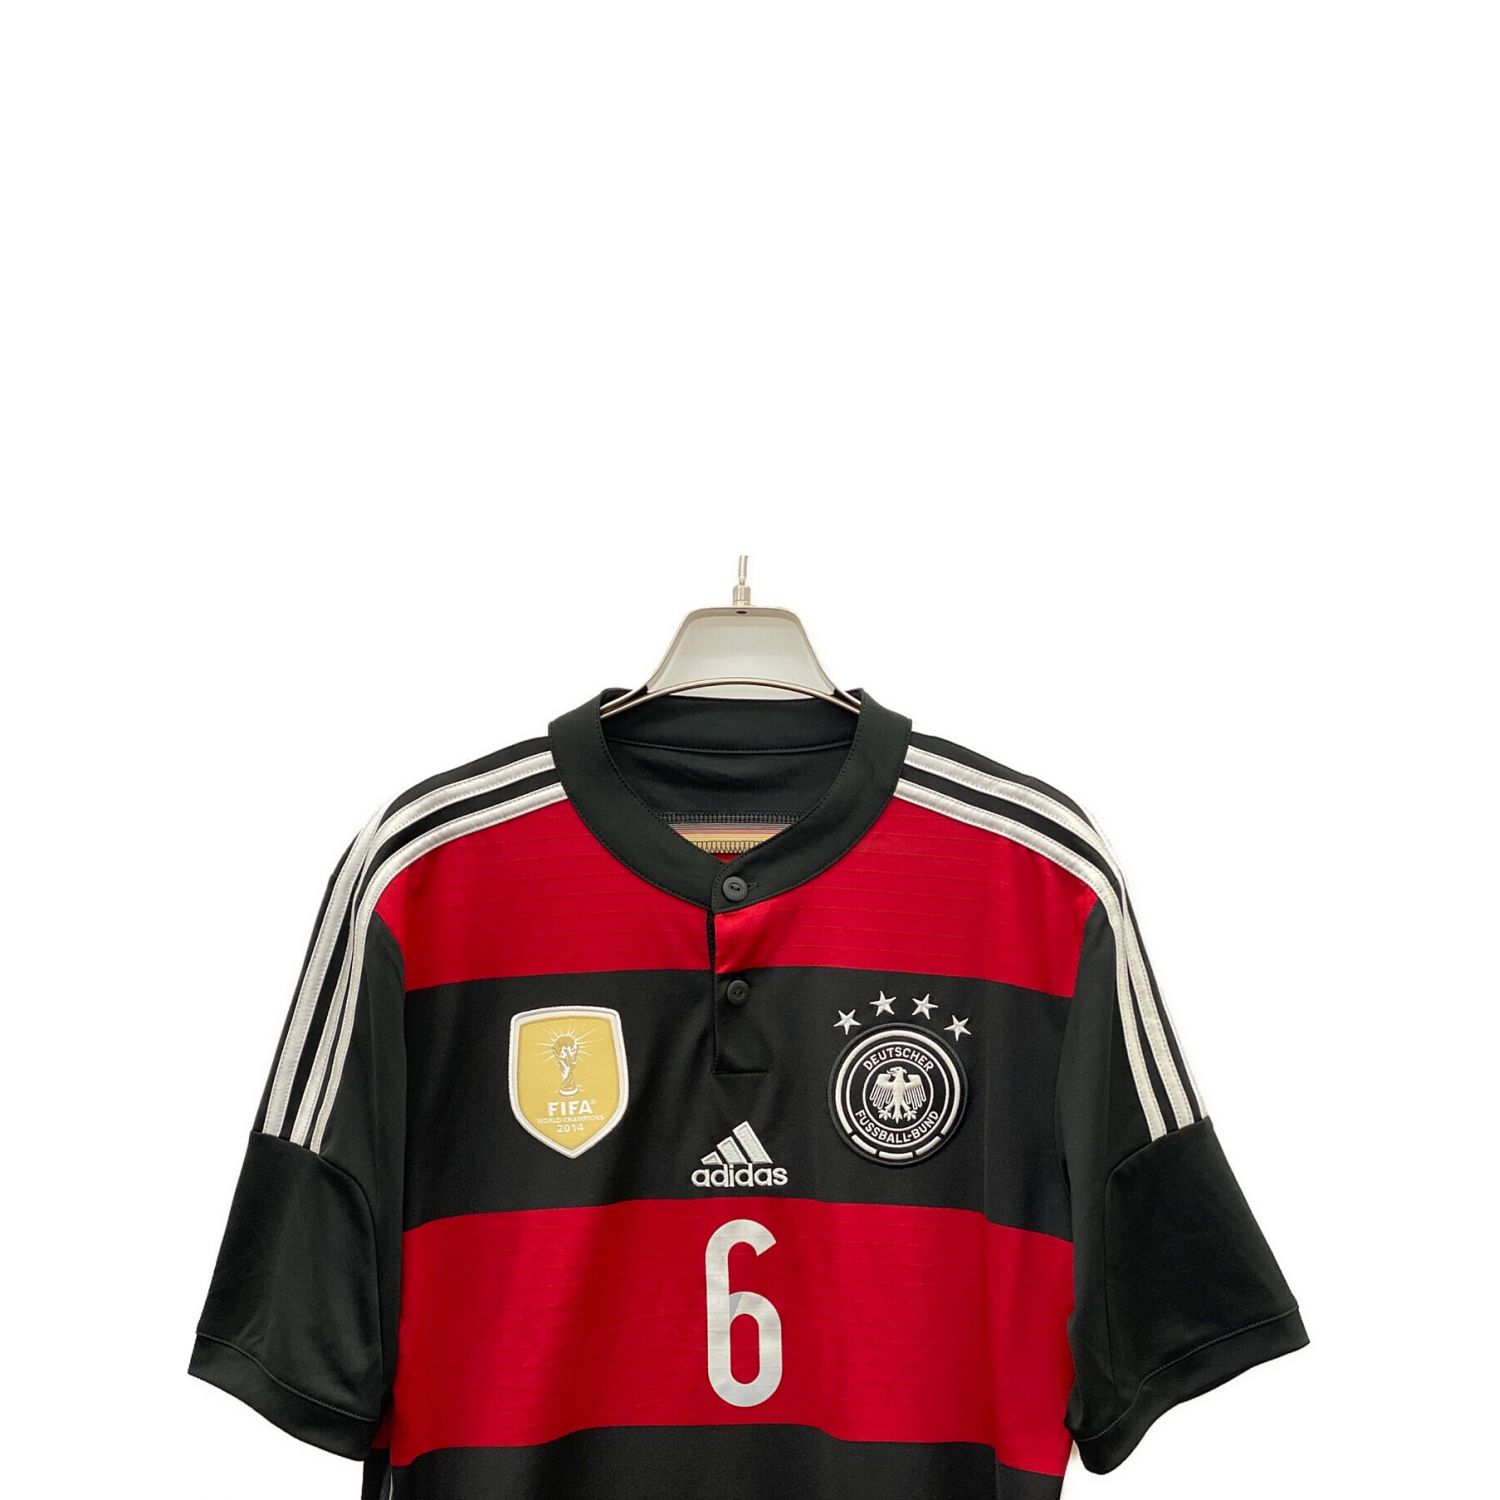 ドイツ代表 サッカーユニフォーム SIZE L ブラック×レッド 2014年W